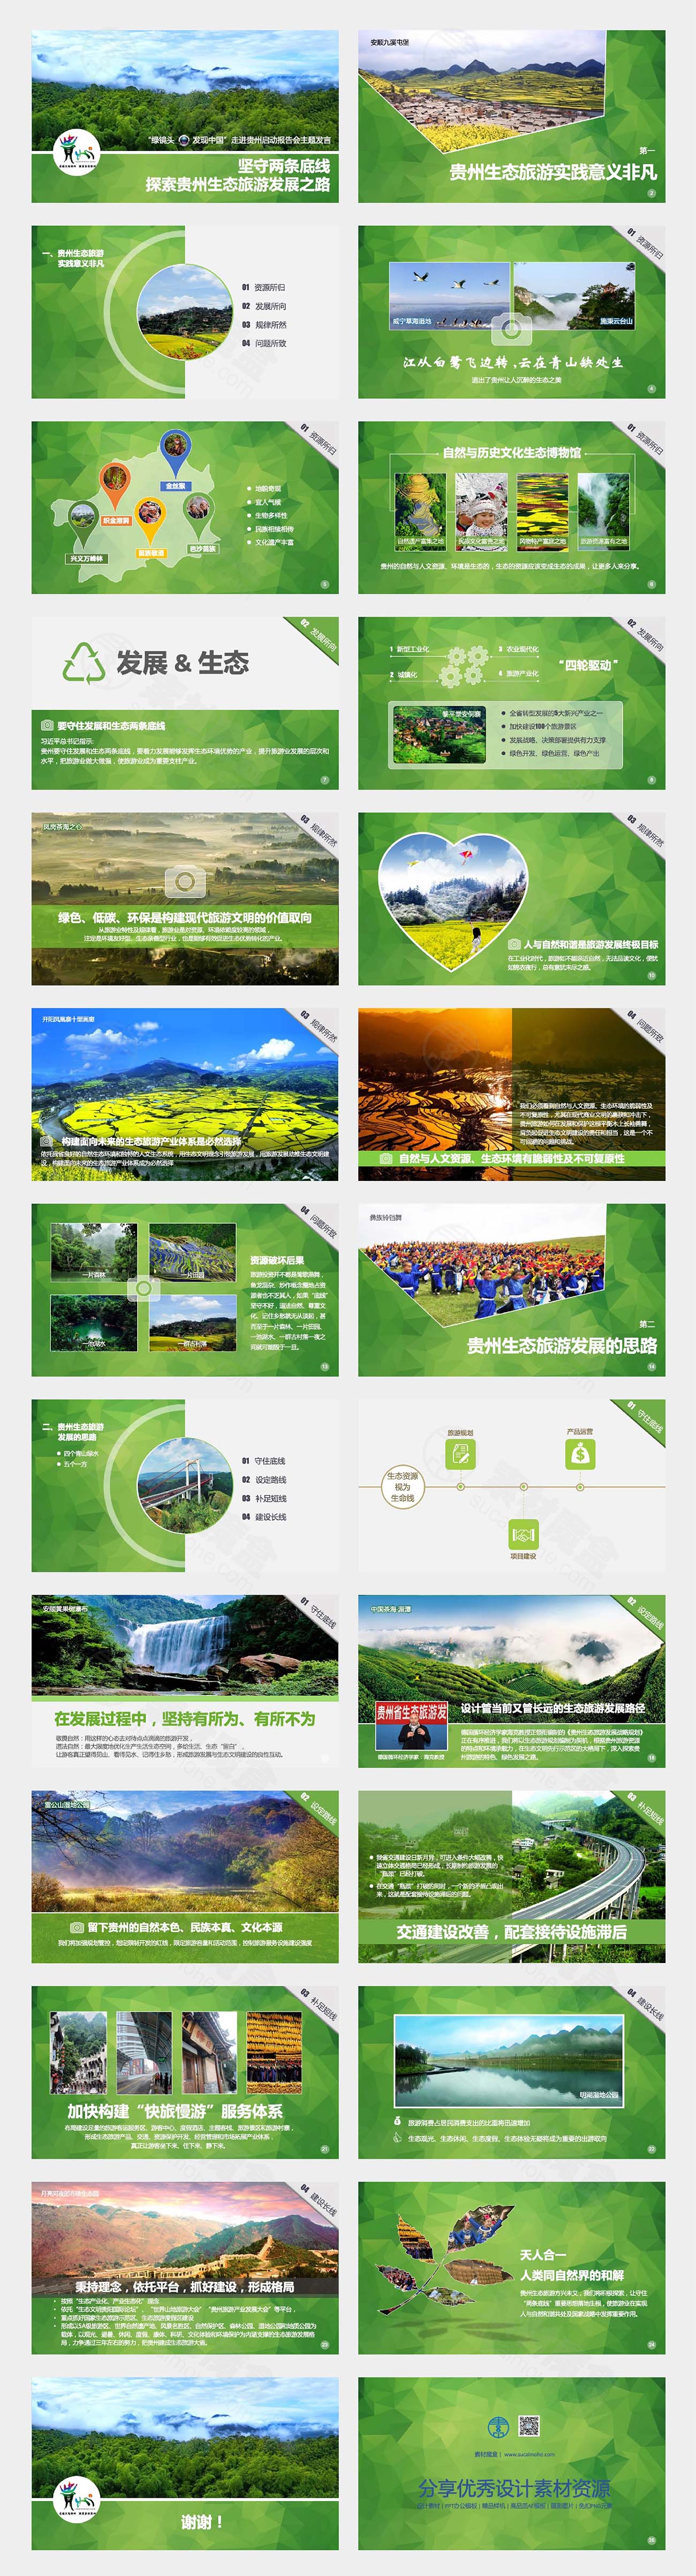 绿色生态发展旅游PPT模板